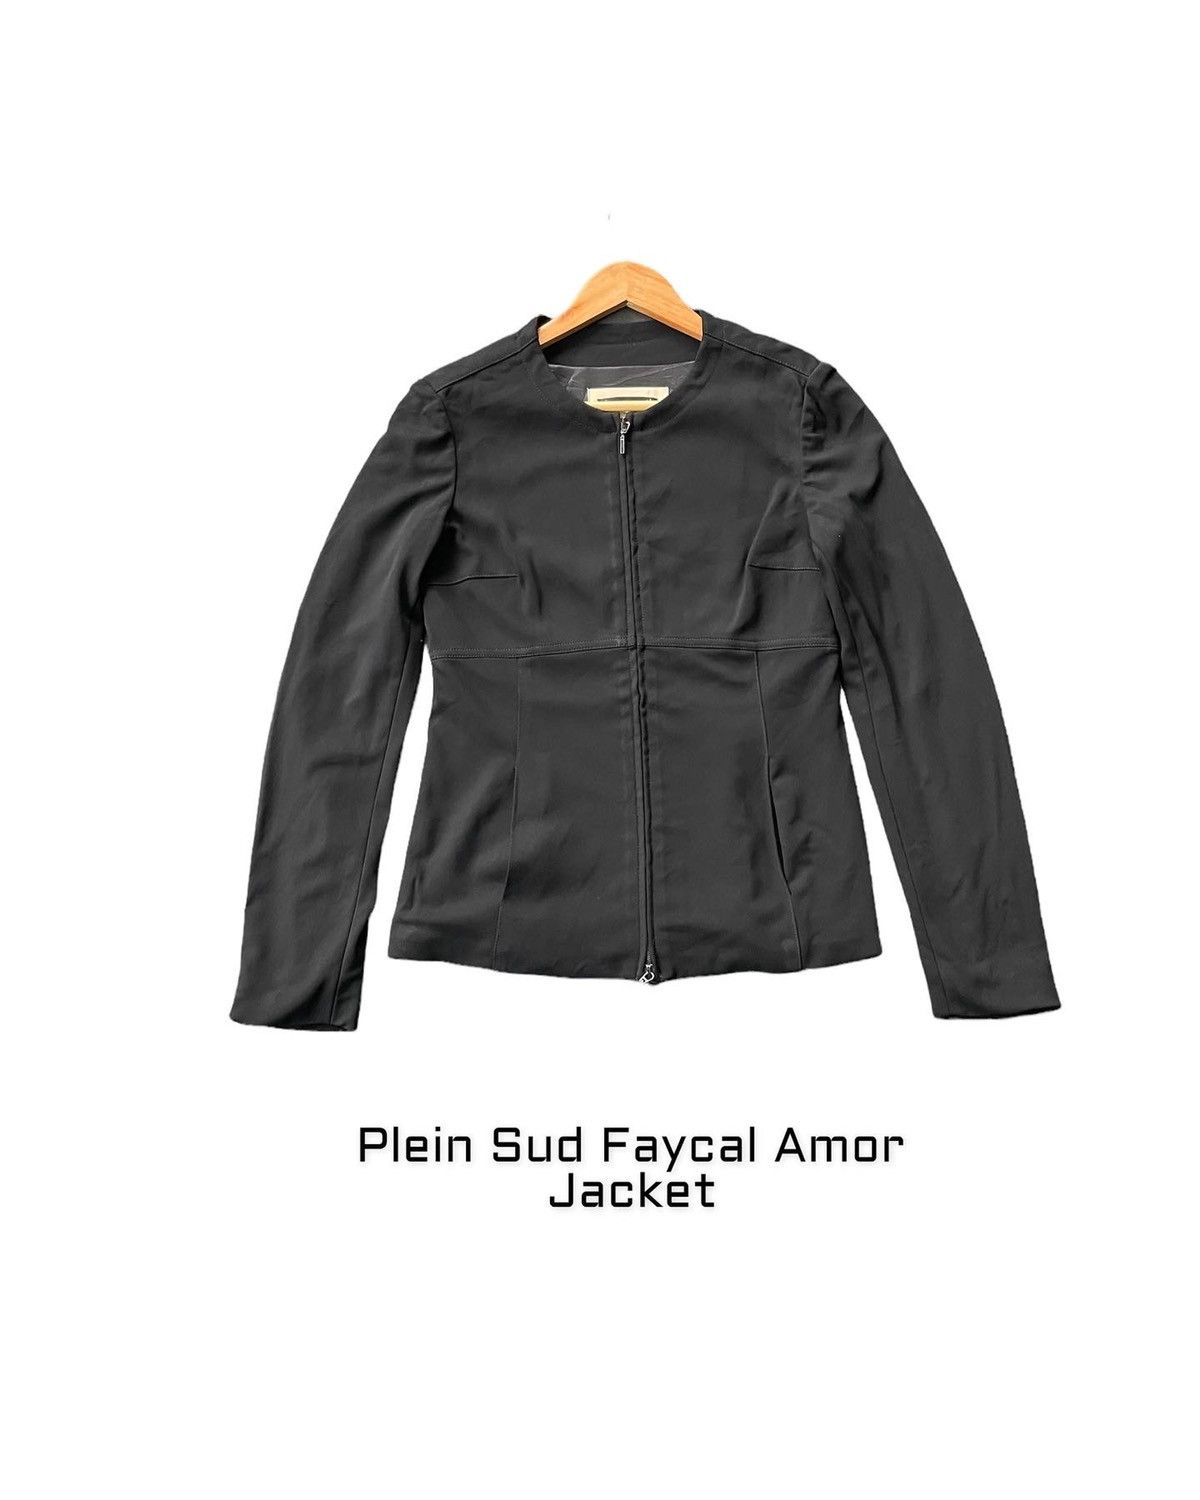 Vintage 🔥STEALS🔥Plein Sud Faycal Amor Paris Jacket Size US S / EU 44-46 / 1 - 1 Preview